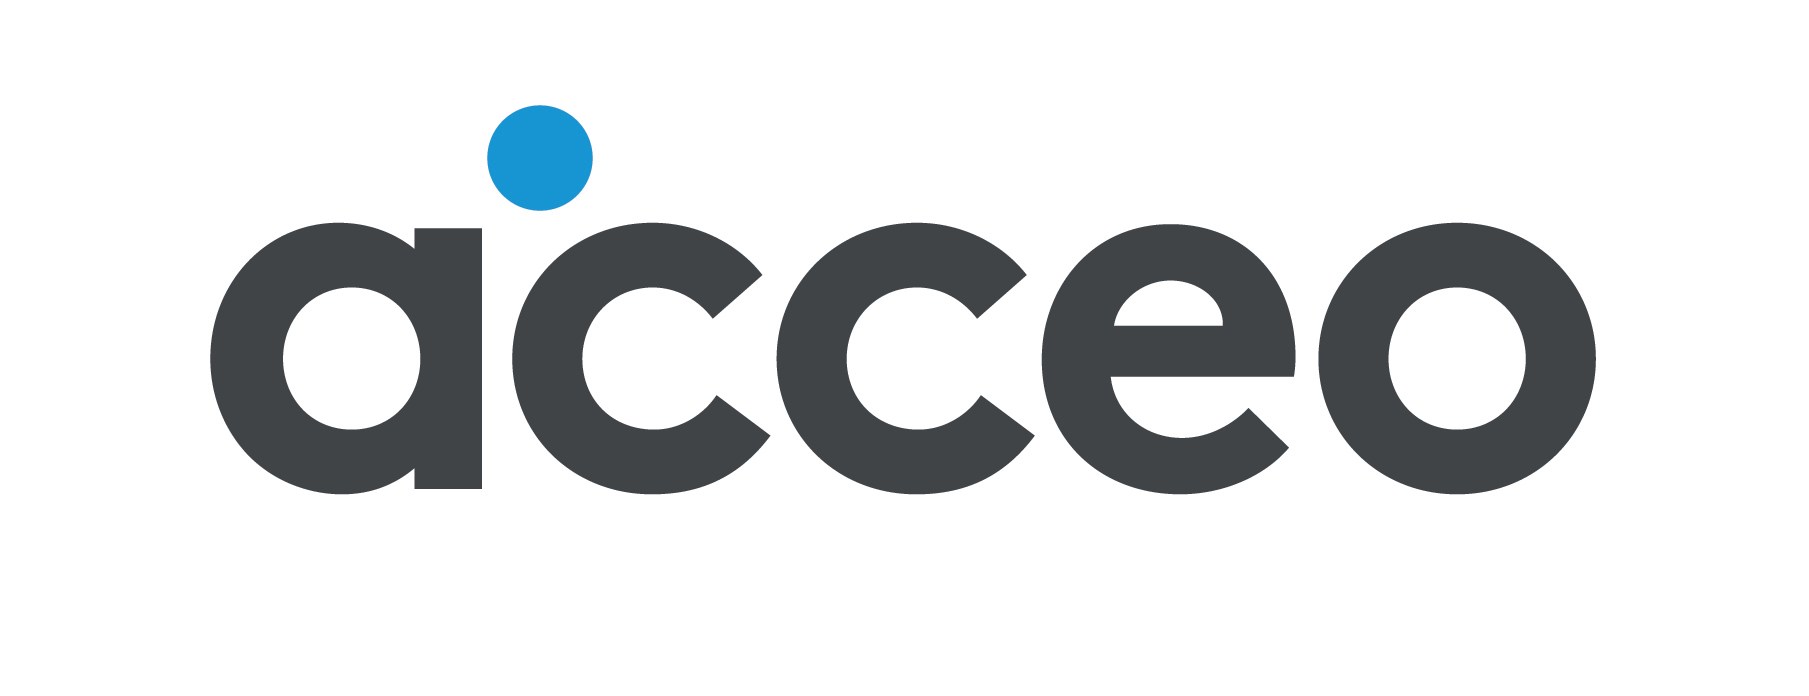 ACCEO Solutions Inc.-La nouvelle image de marque d'ACCEO axée su